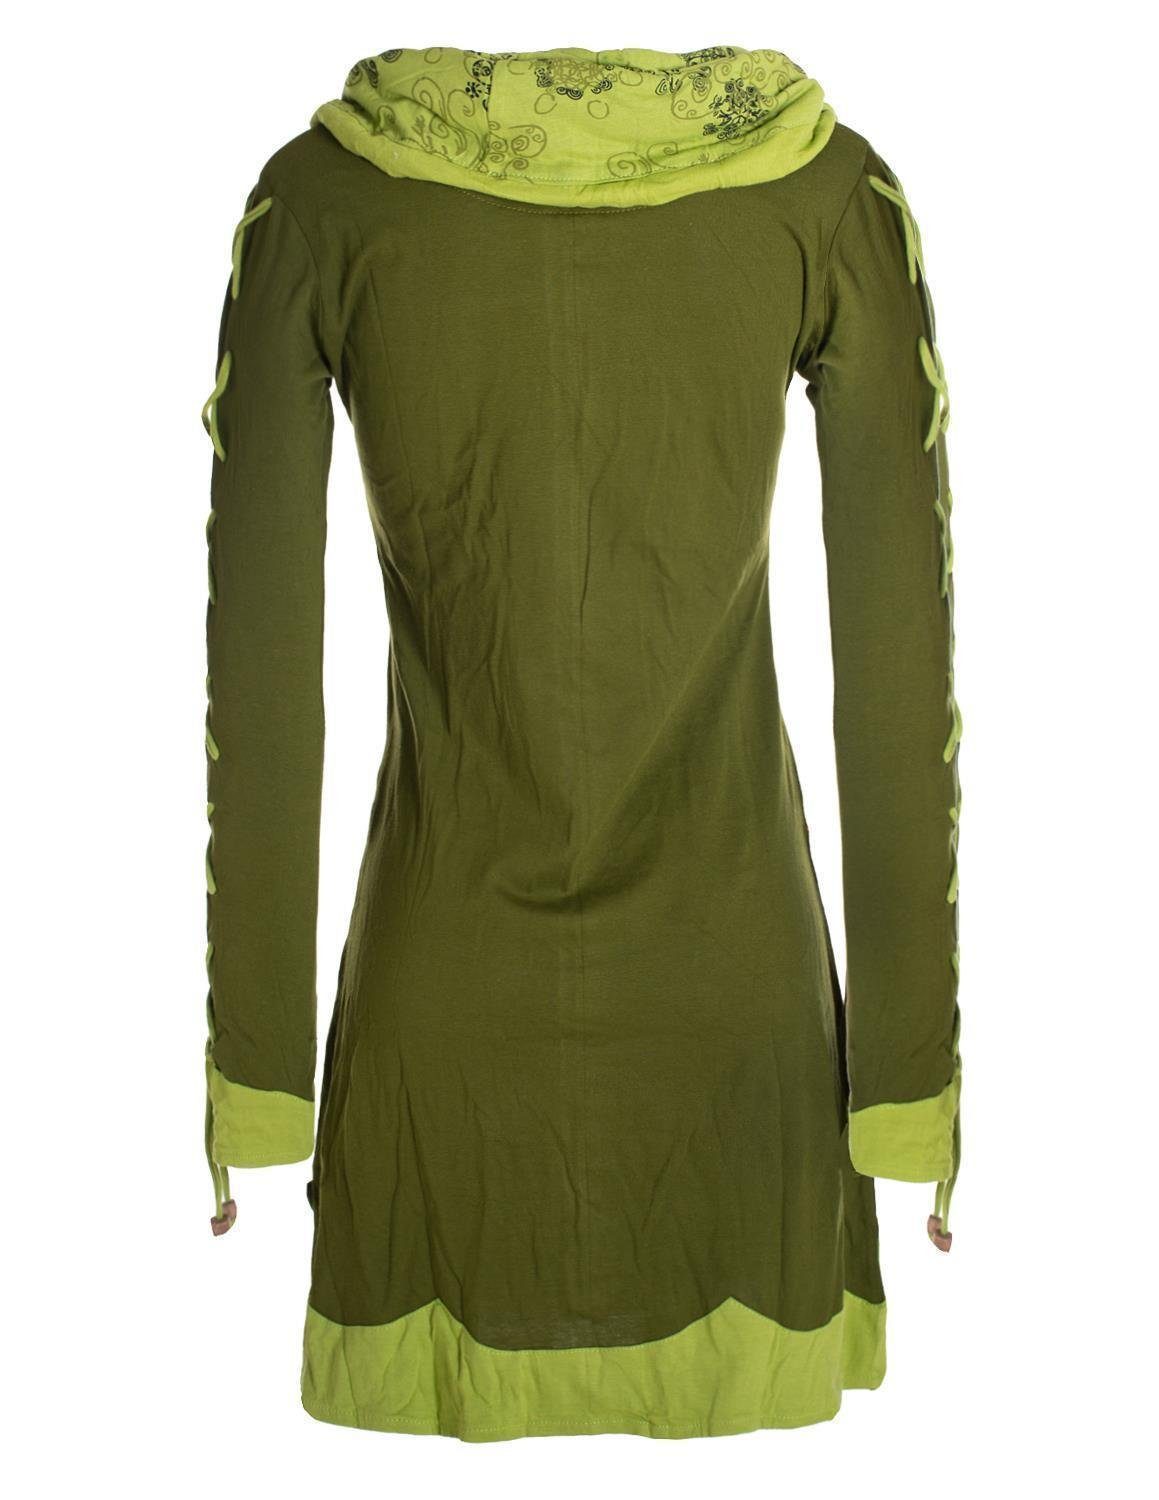 Vishes Jerseykleid Blumenkleid Style mit Langarm-Shirtkleid Hippie, olive Elfen Boho, Schalkragen